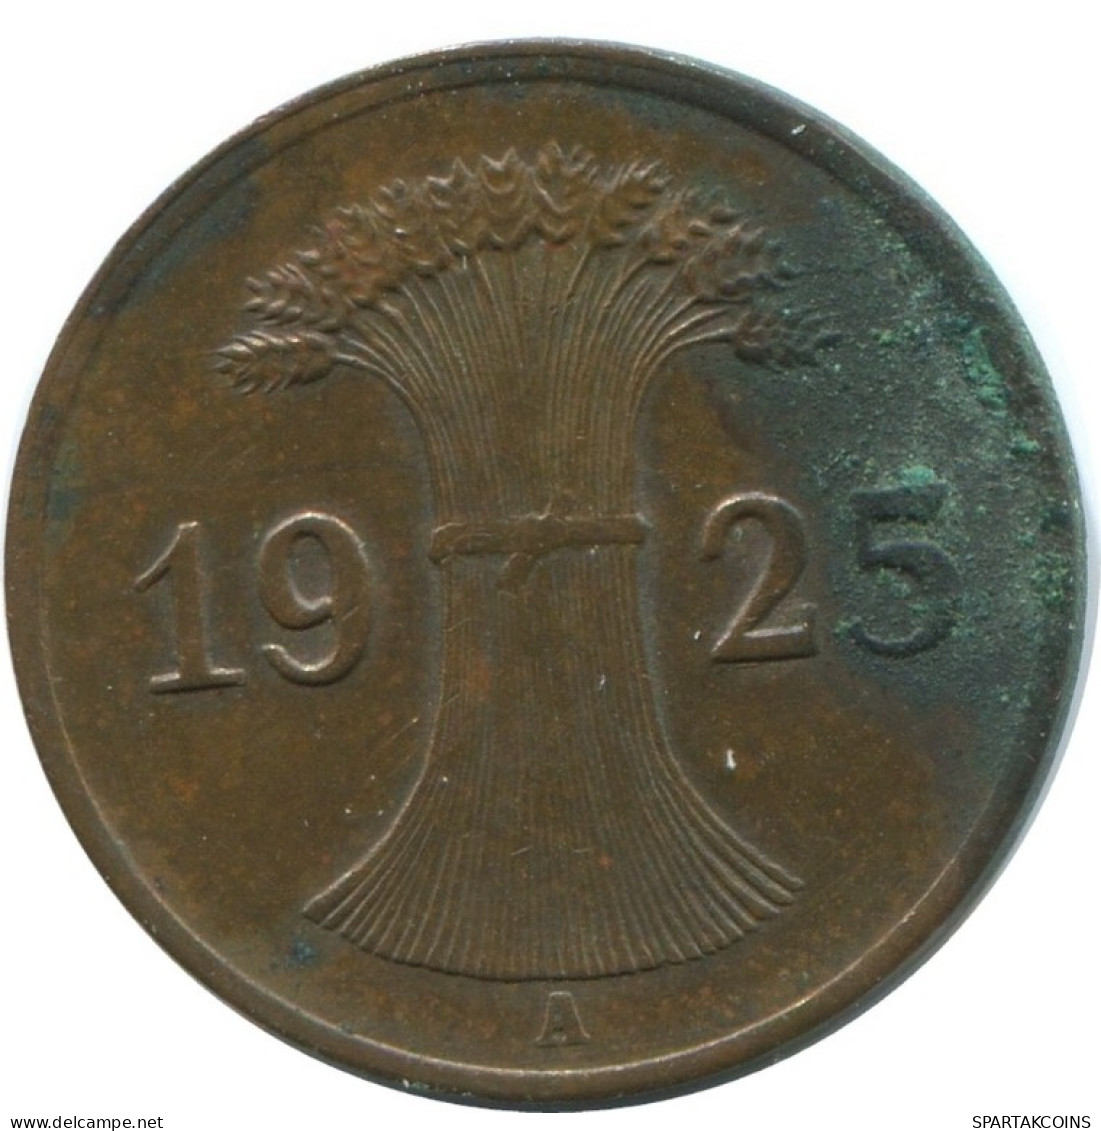 1 REICHSPFENNIG 1925 A DEUTSCHLAND Münze GERMANY #AD456.9.D.A - 1 Renten- & 1 Reichspfennig